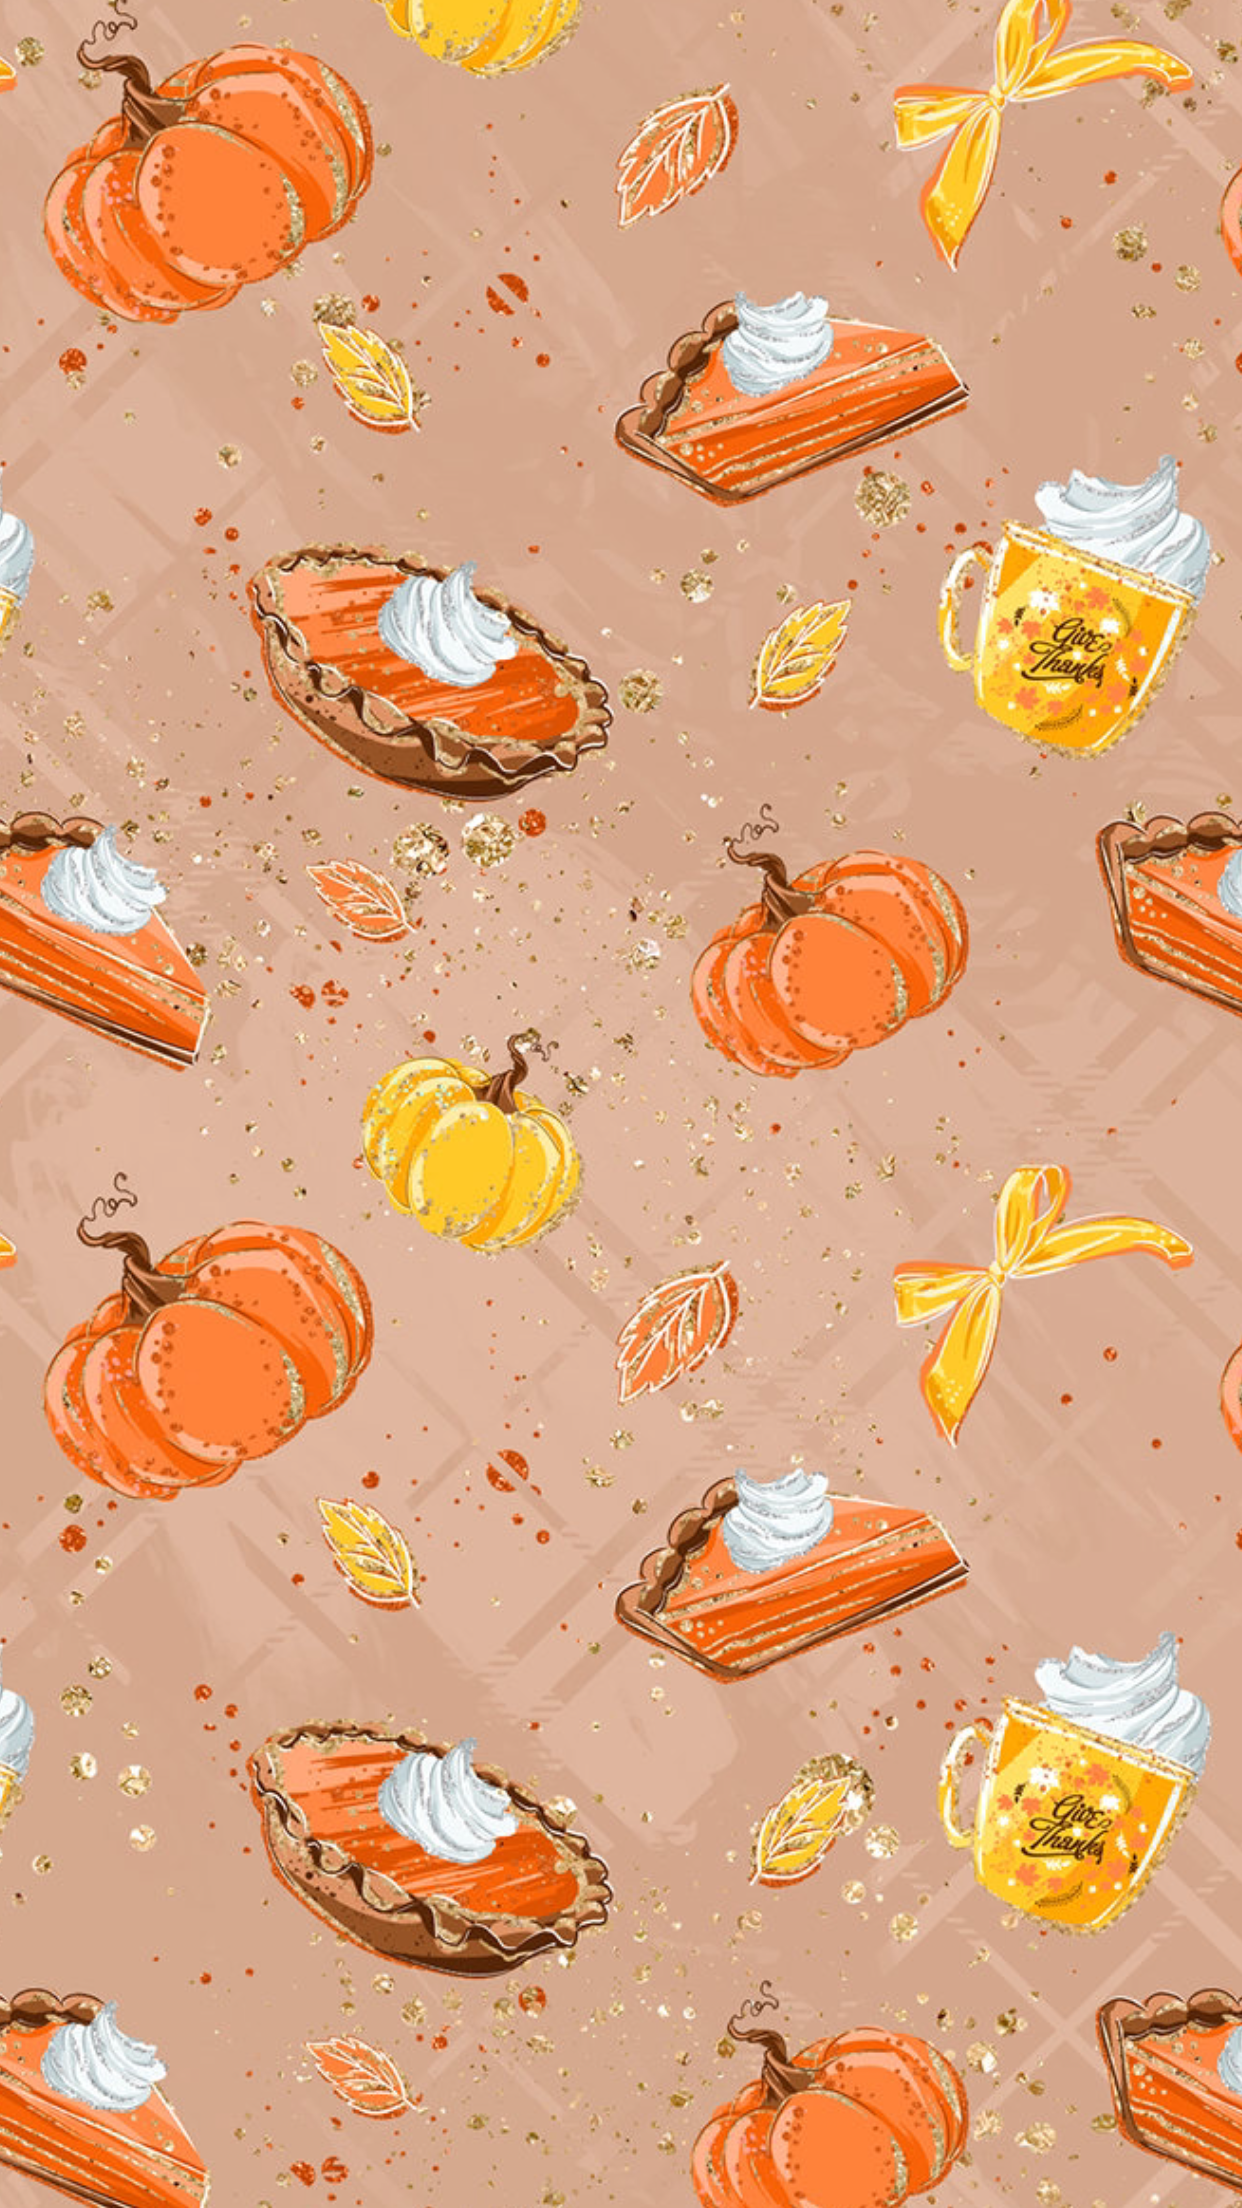 Pumpkin Pie Wallpaper Free Pumpkin Pie Background